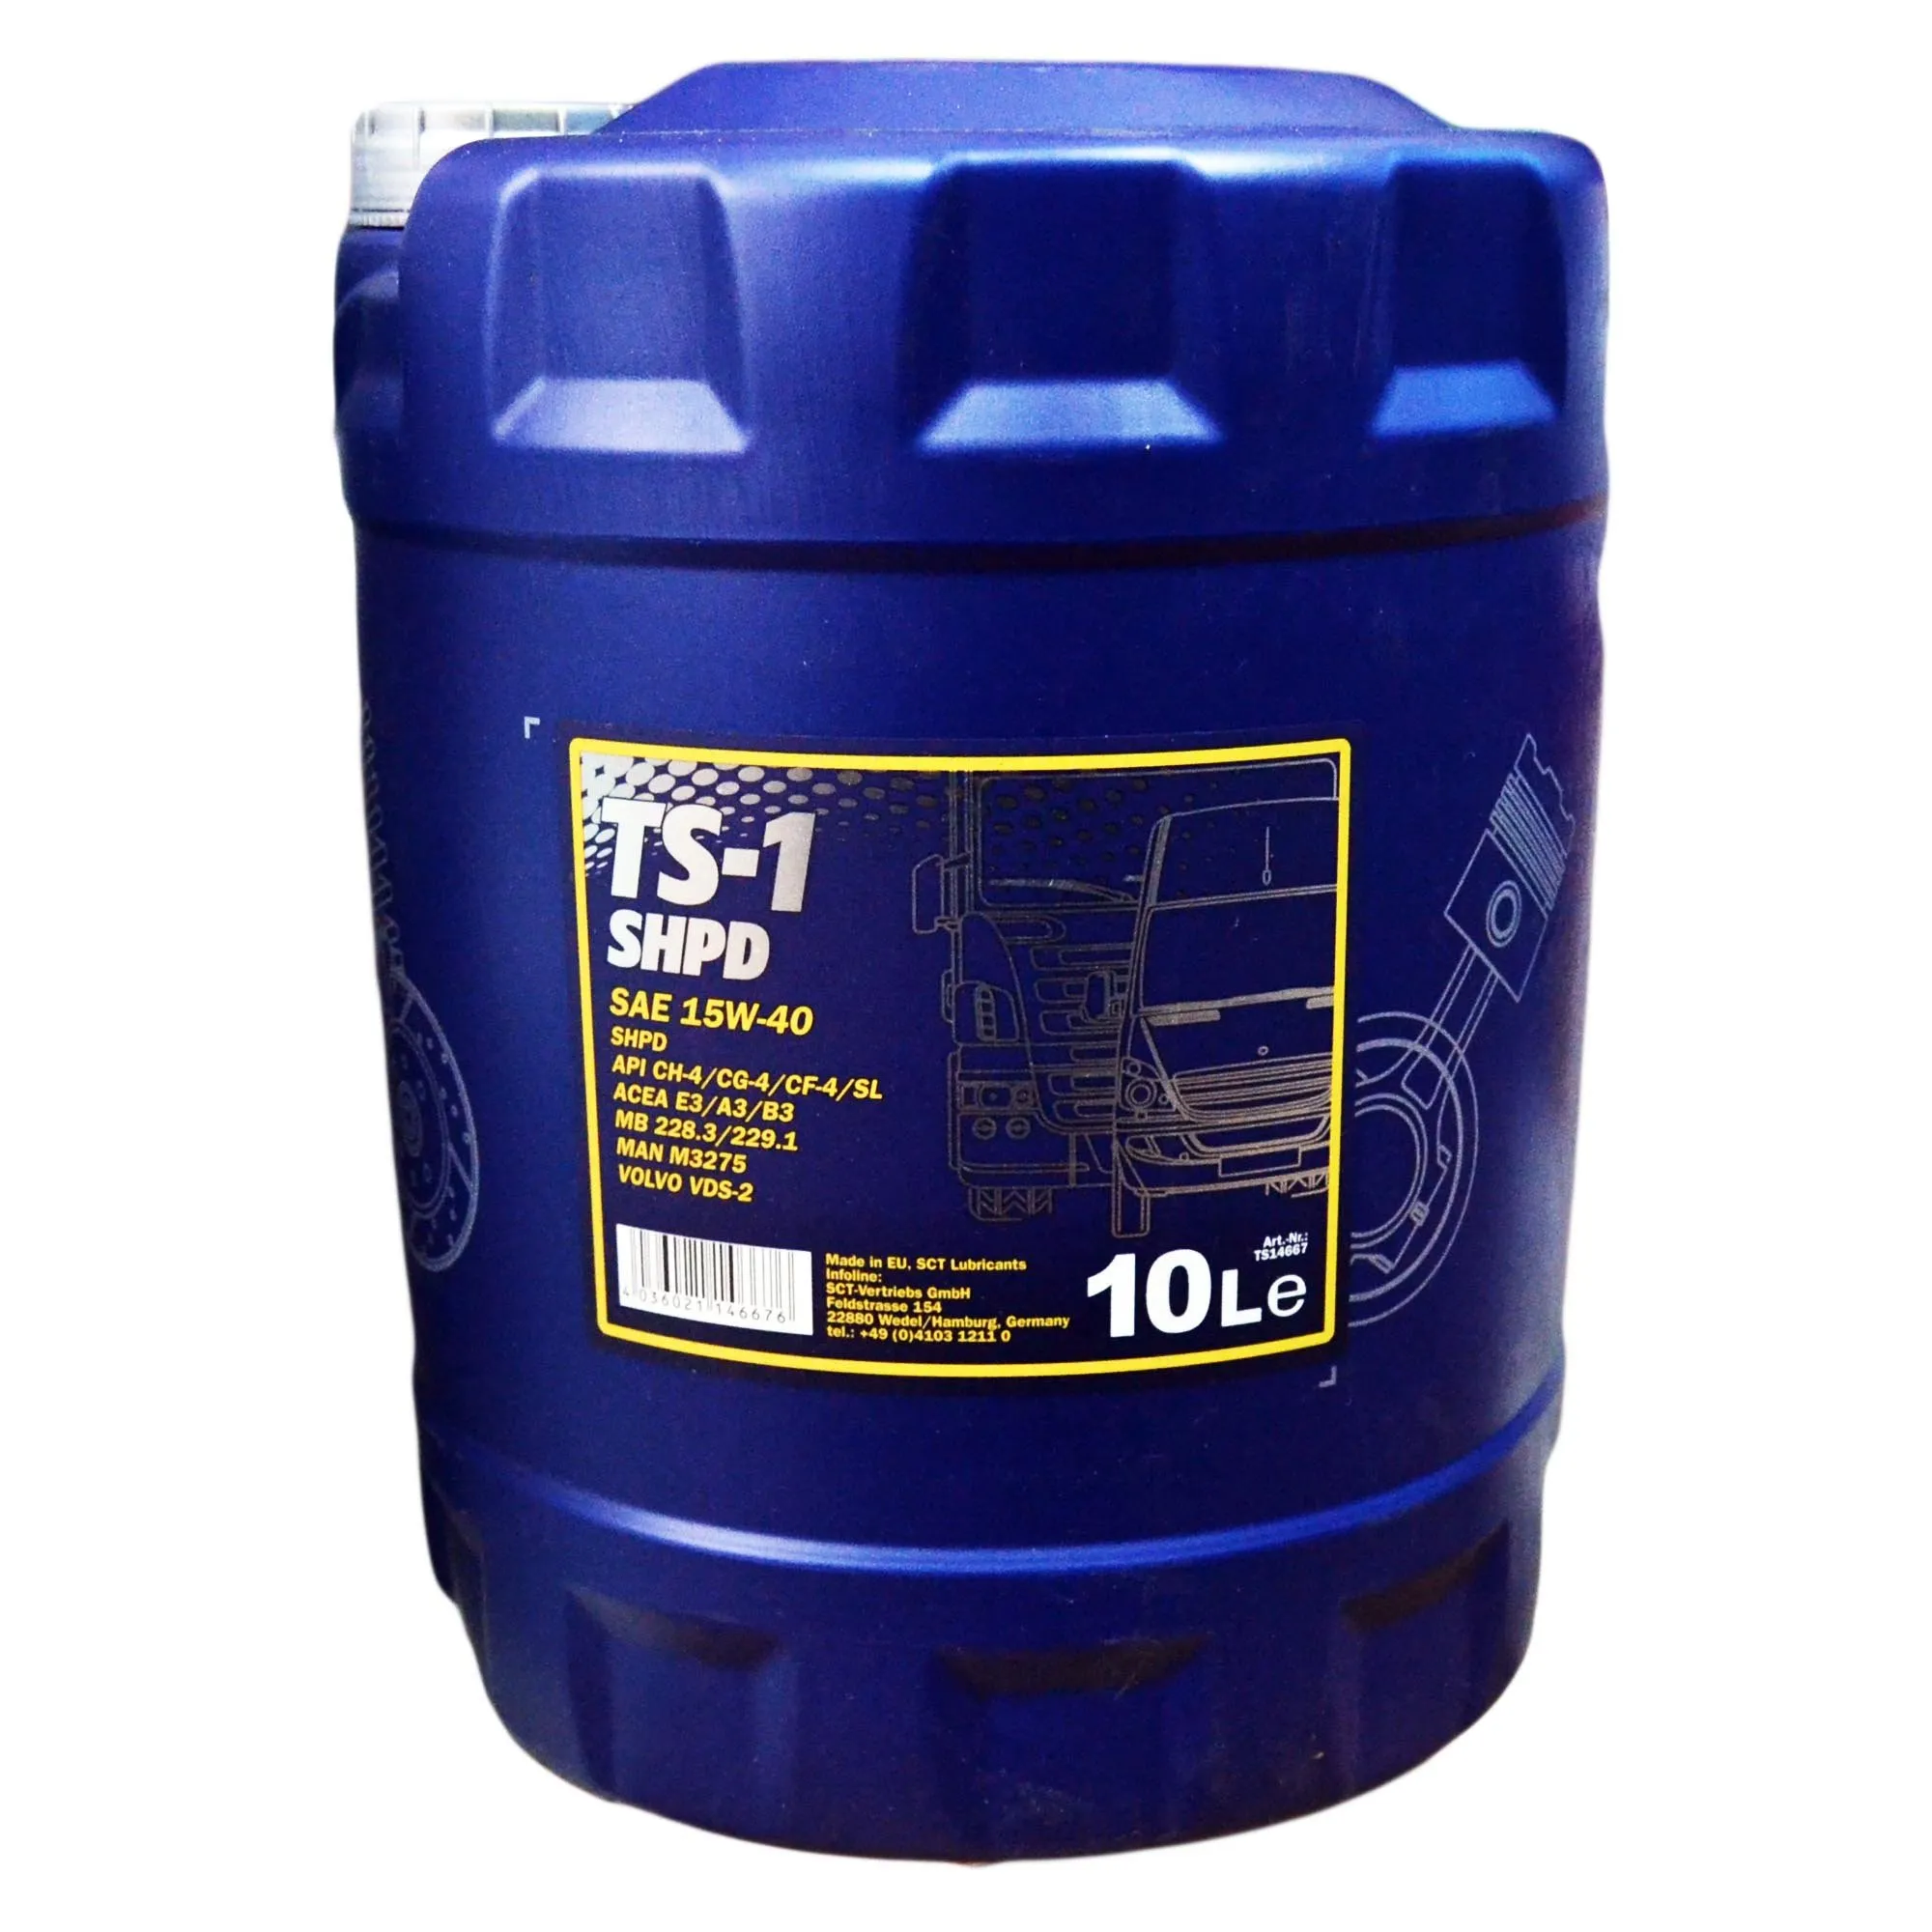 Моторное масло Mannol TS-1  15w40 SHPD  API CH-4/CG-4/CF-4/SL   5 л#3